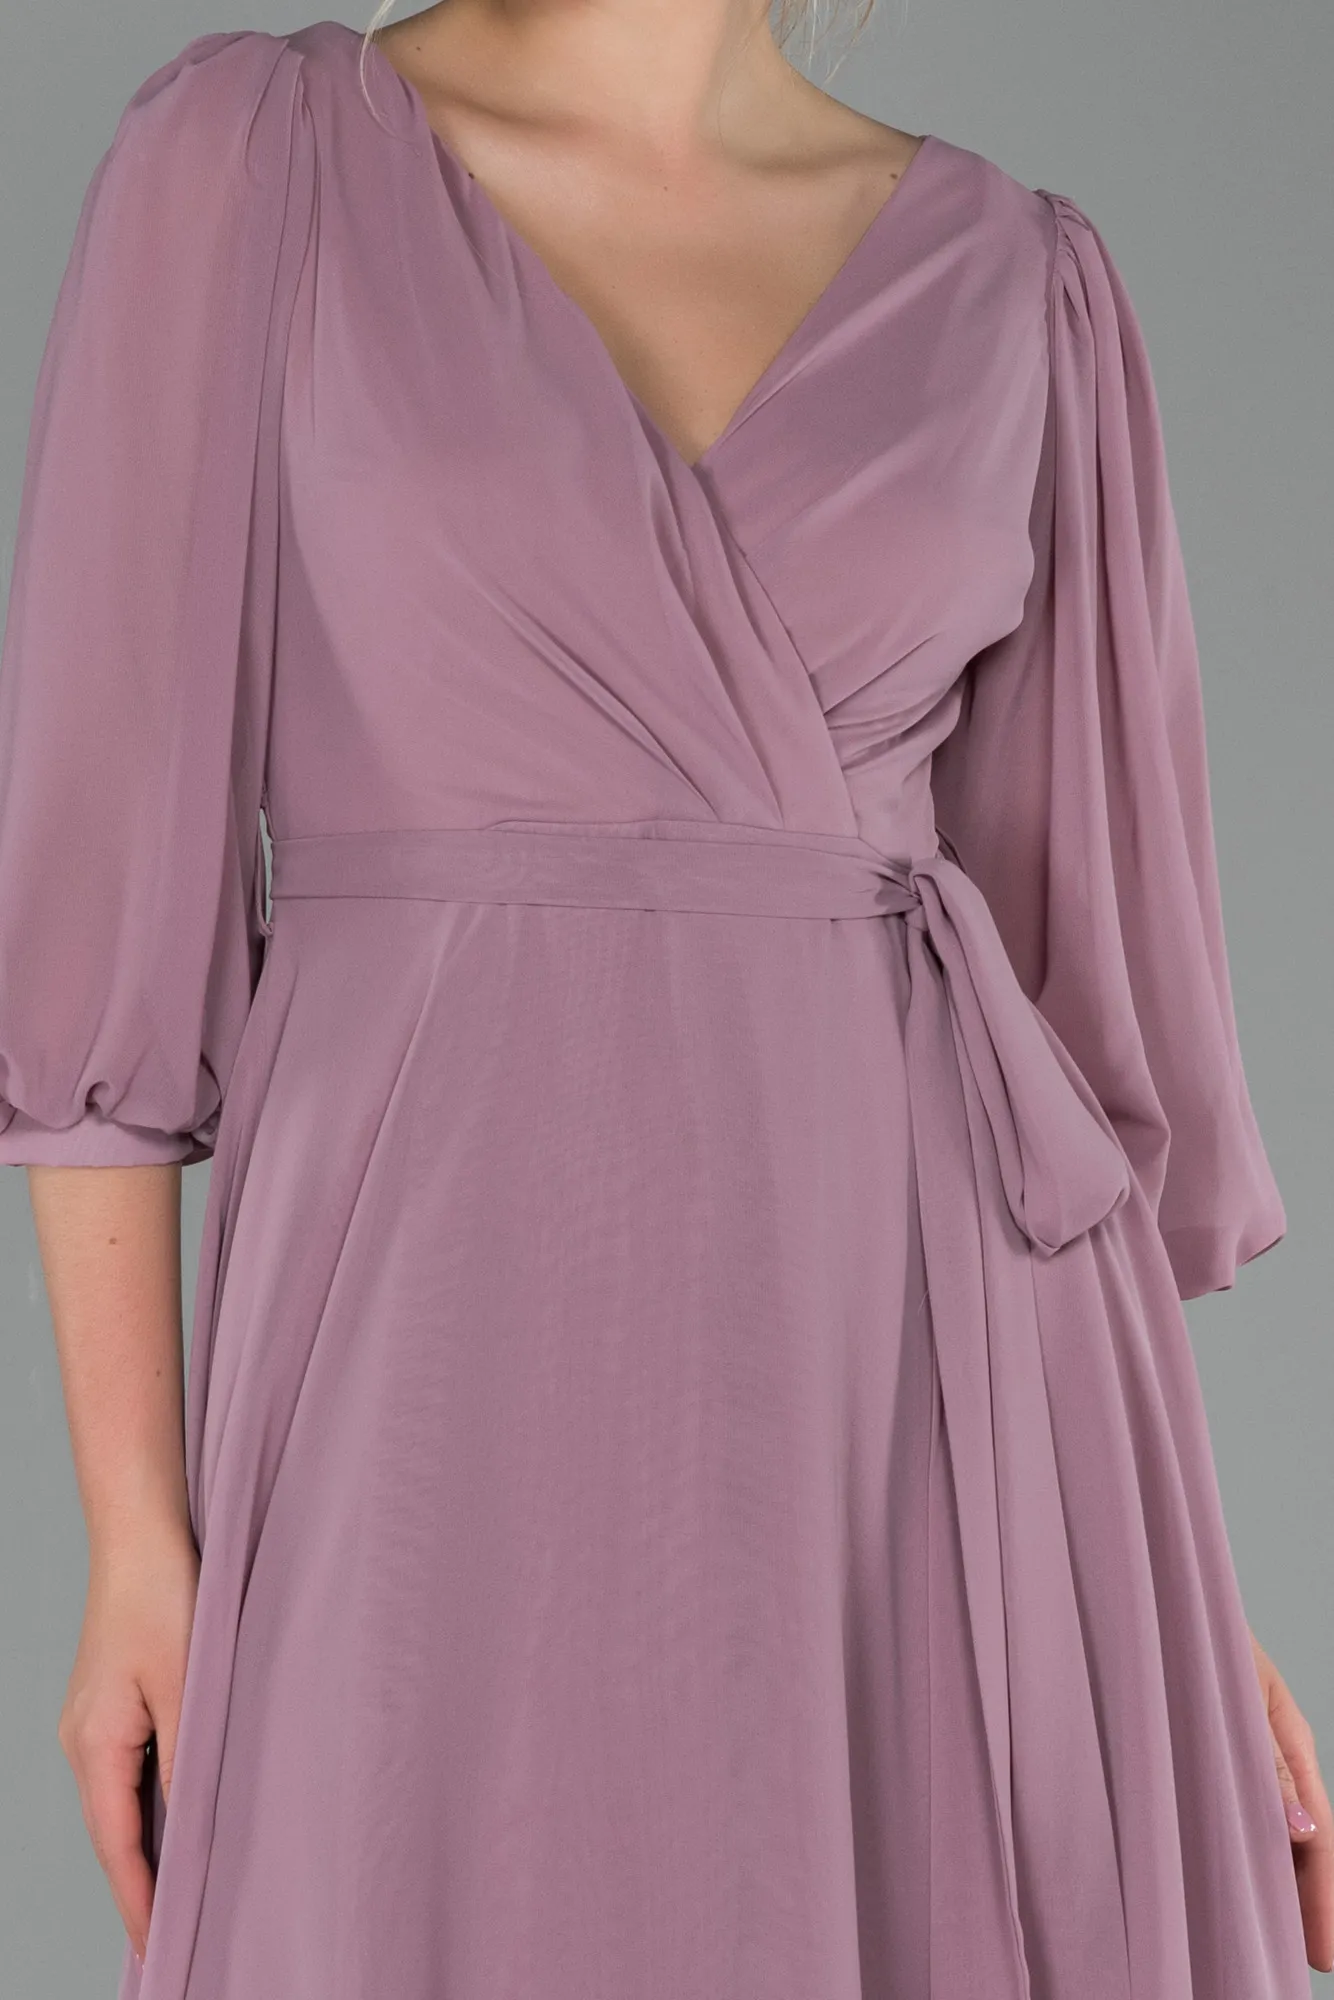 Rose Colored-Long Chiffon Invitation Dress ABU1729